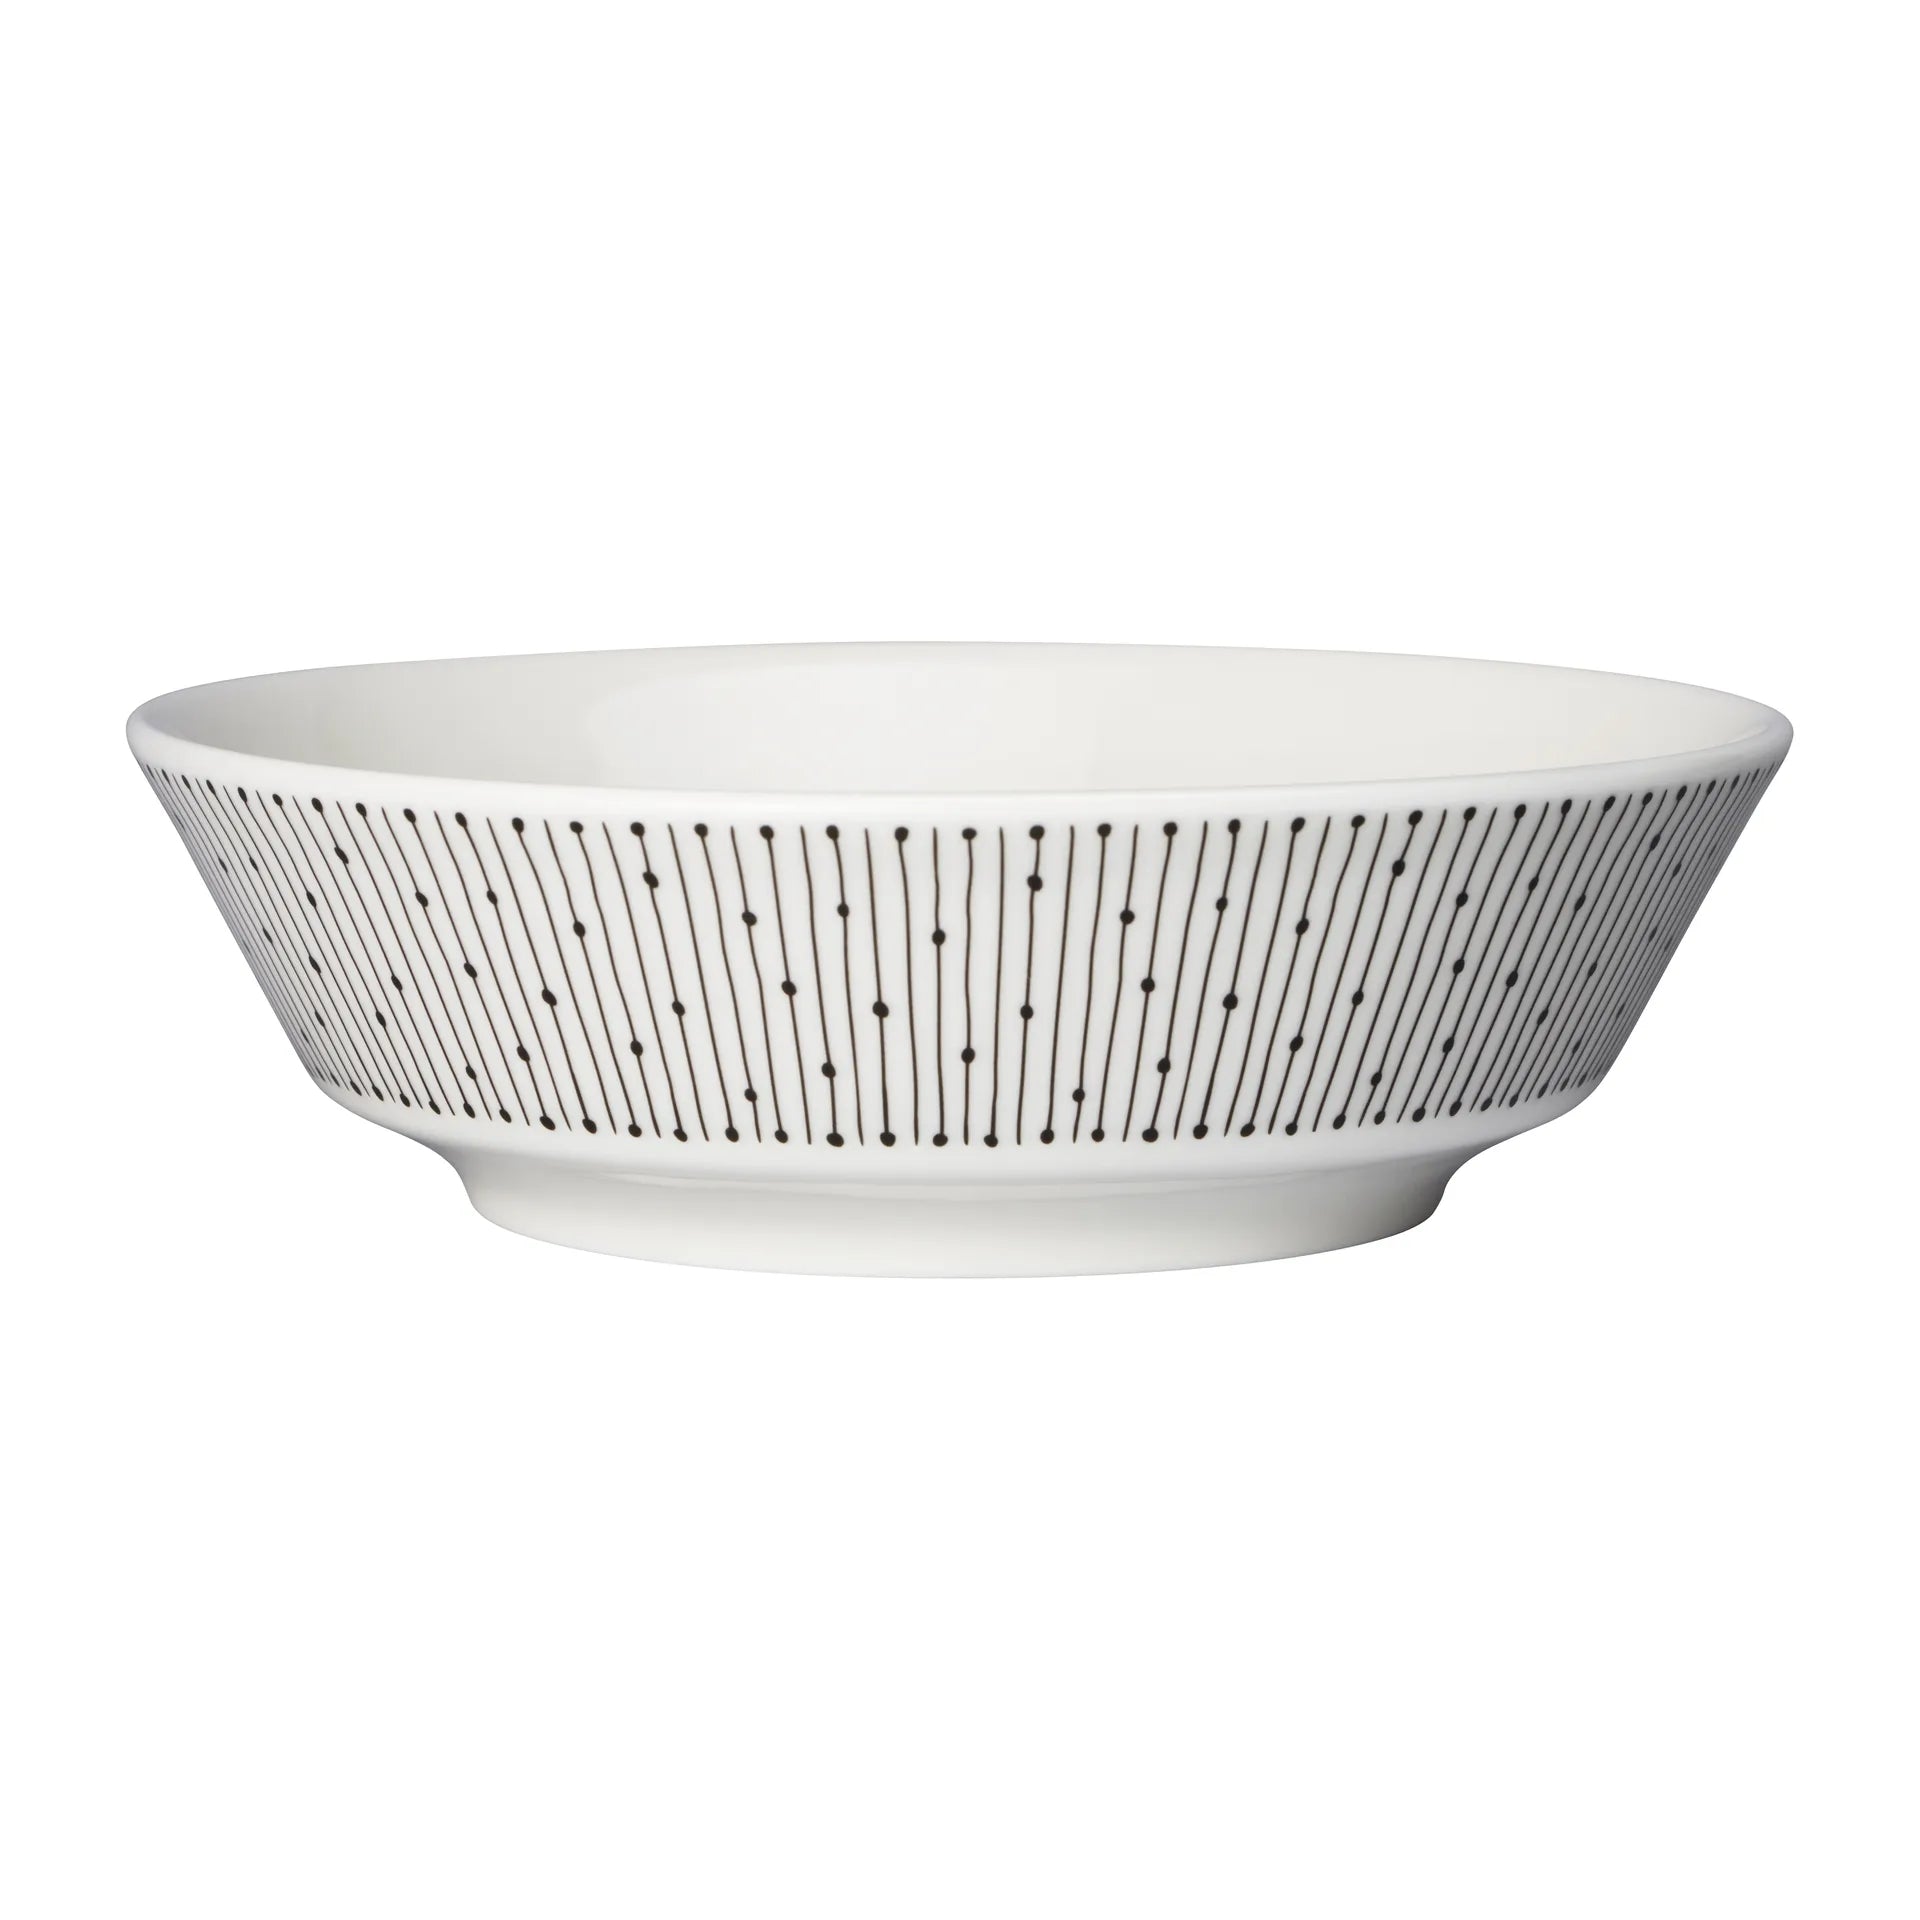 Mainio Sarastus bowl Ø17 cm - Black-white